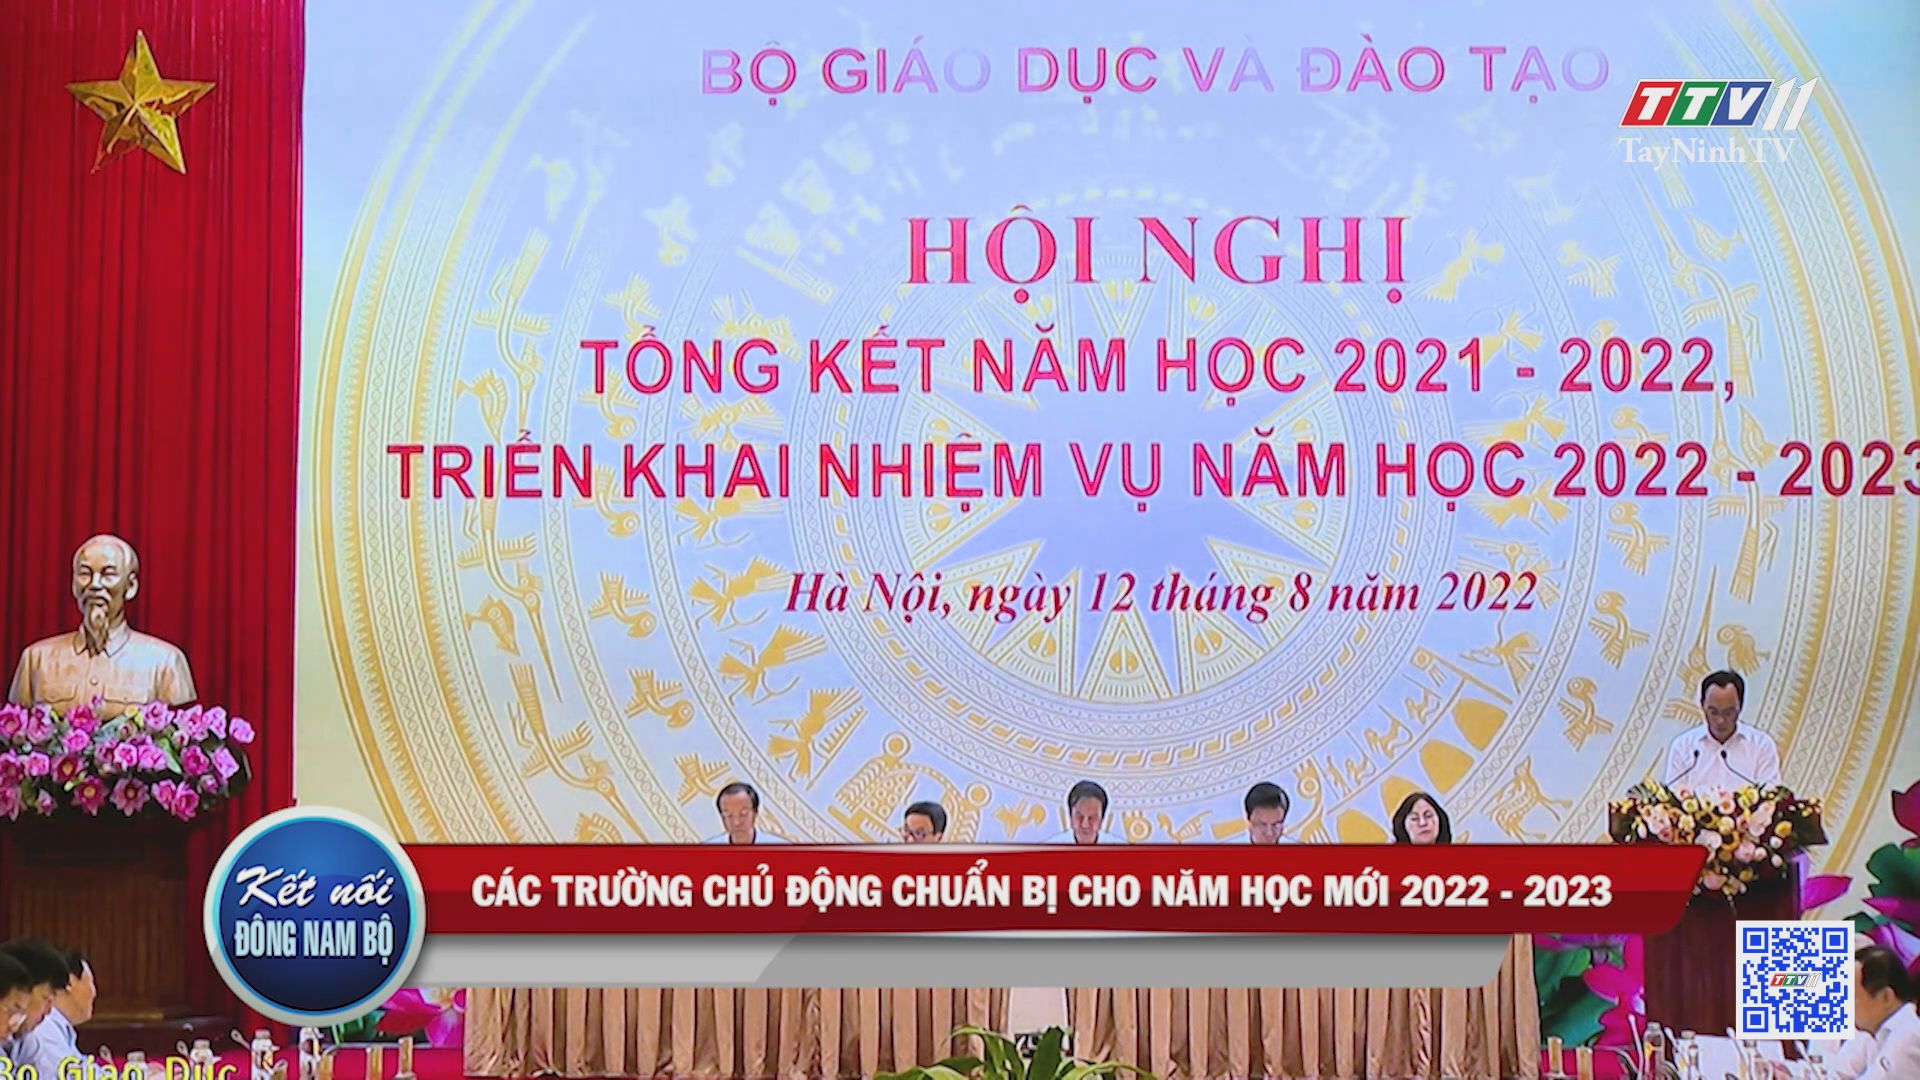 Các trường chủ động chuẩn bị cho năm học mới 2022 - 2023 | KẾT NỐI ĐÔNG NAM BỘ | TayNinhTV